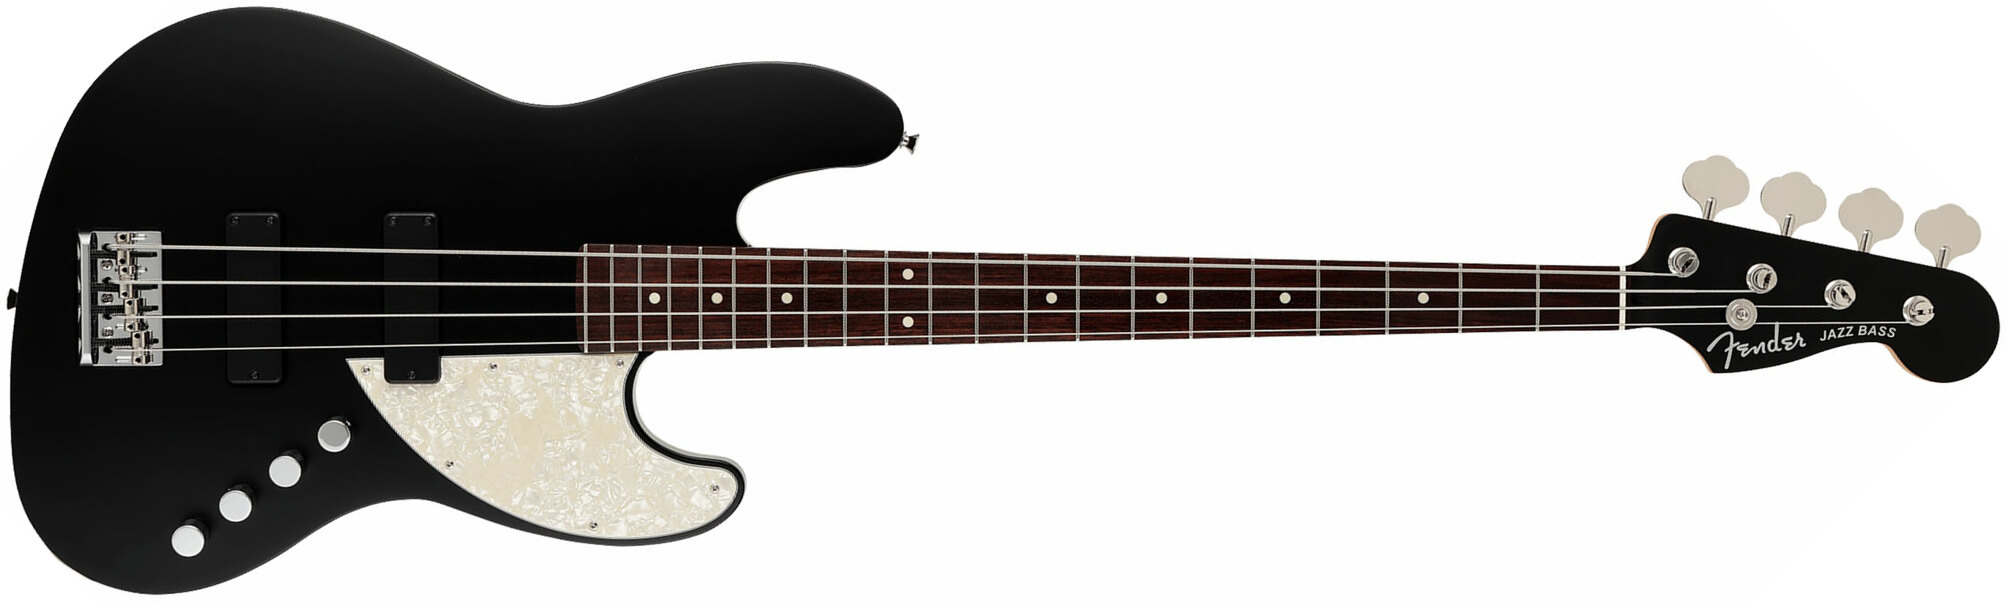 Fender Jazz Bass Elemental Mij Jap Active Rw - Stone Black - Basse Électrique Solid Body - Main picture